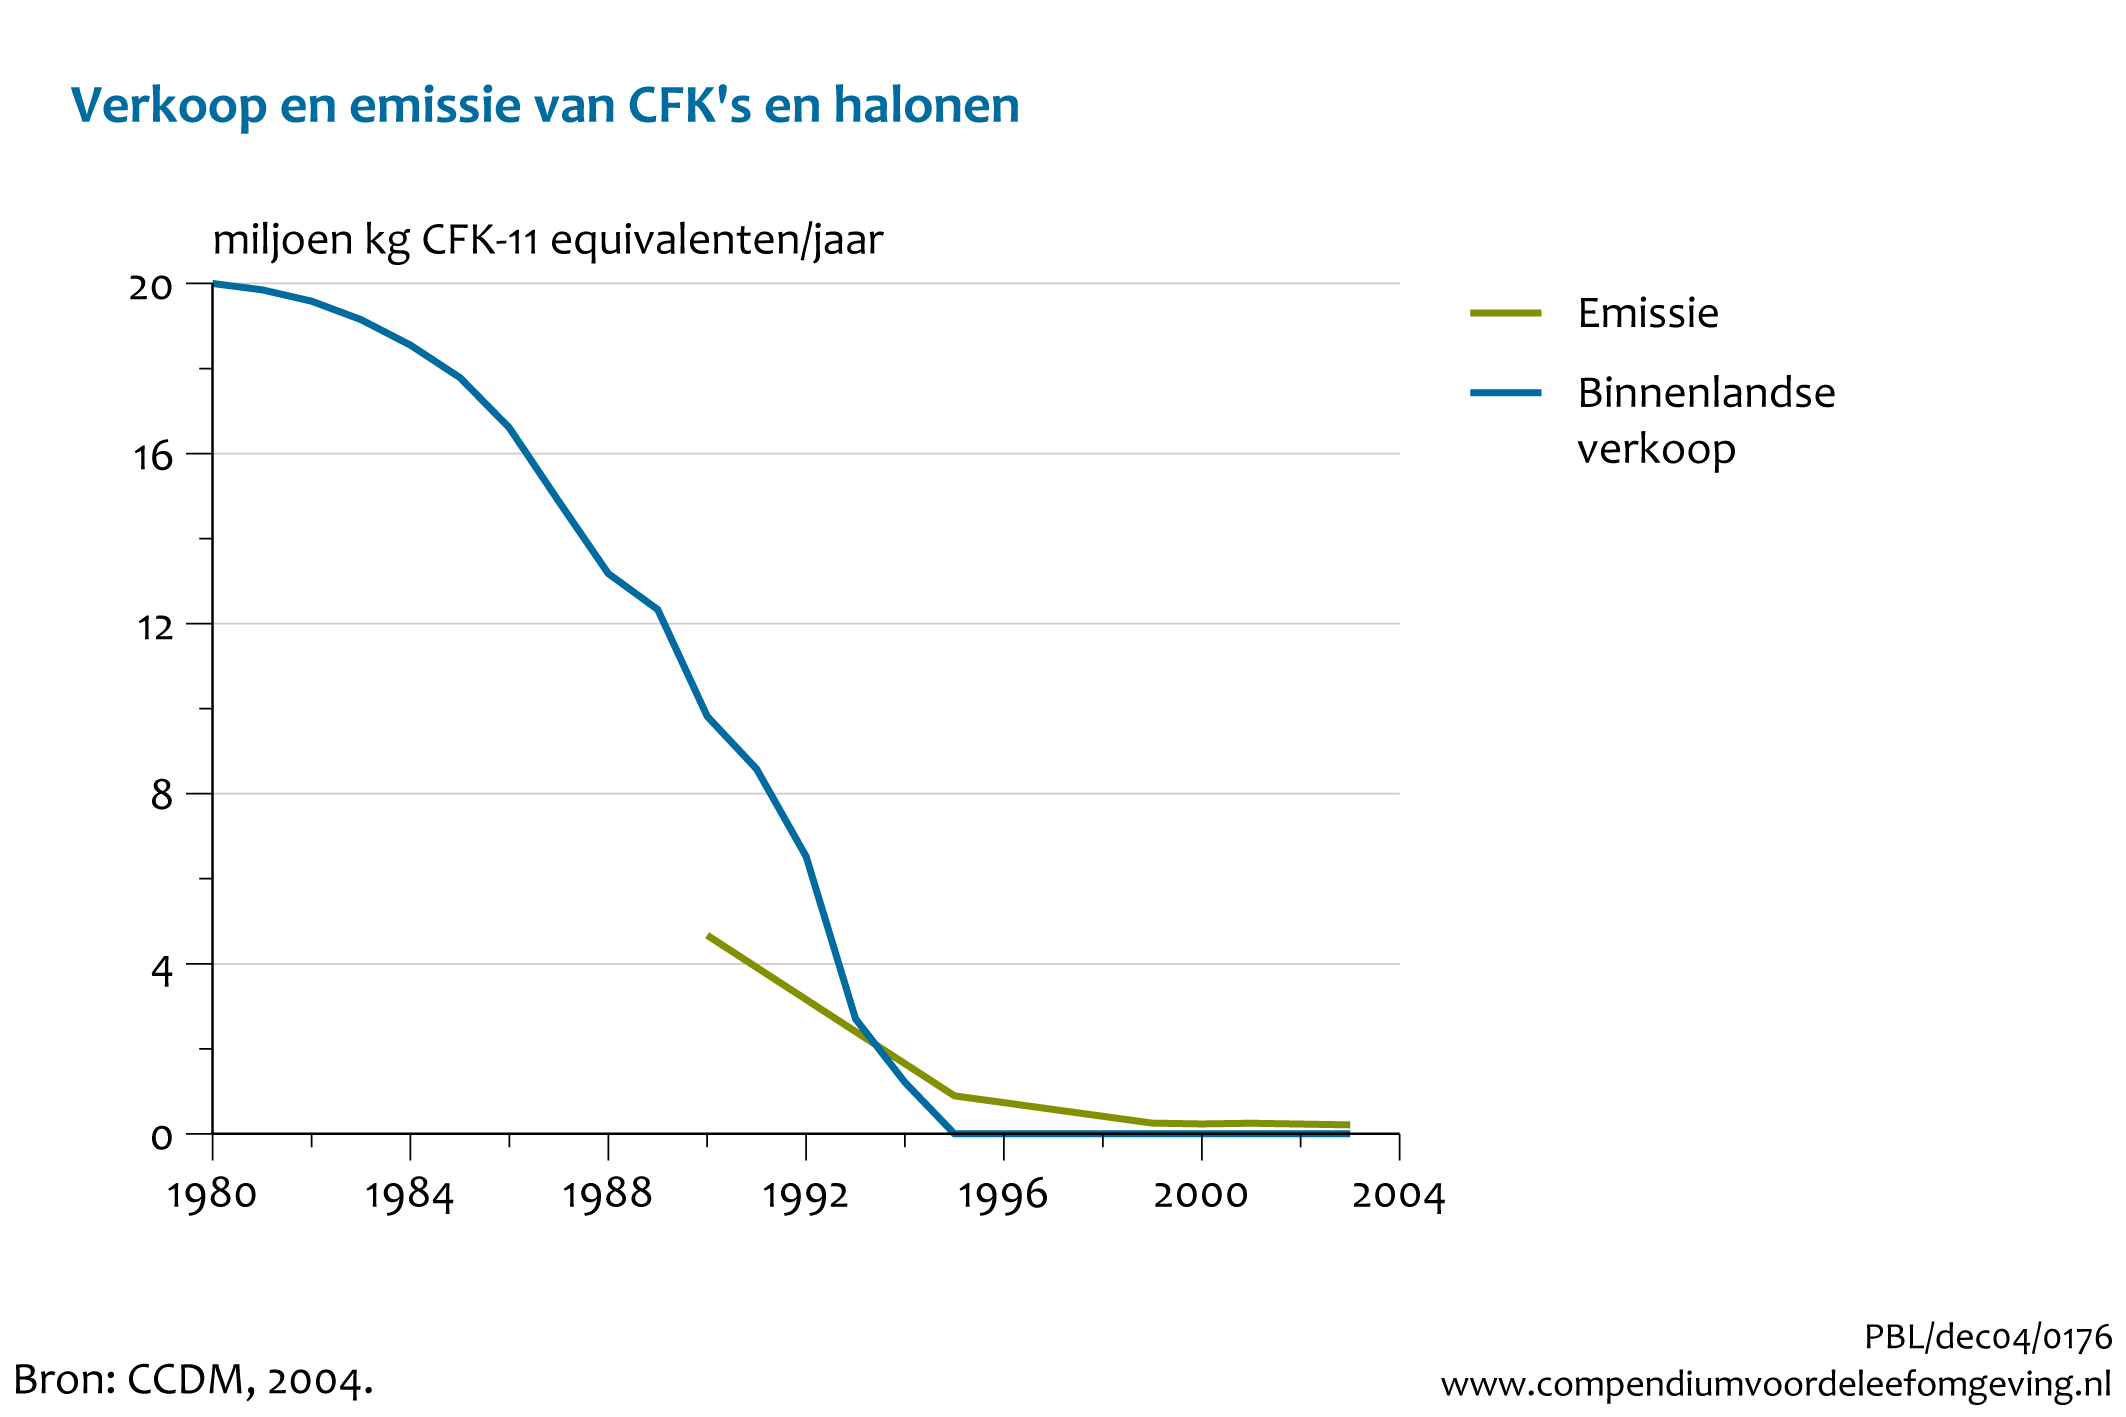 Figuur Figuur bij indicator Verkoop en emissie van CFK's en halonen in Nederland, 1980-2003. In de rest van de tekst wordt deze figuur uitgebreider uitgelegd.